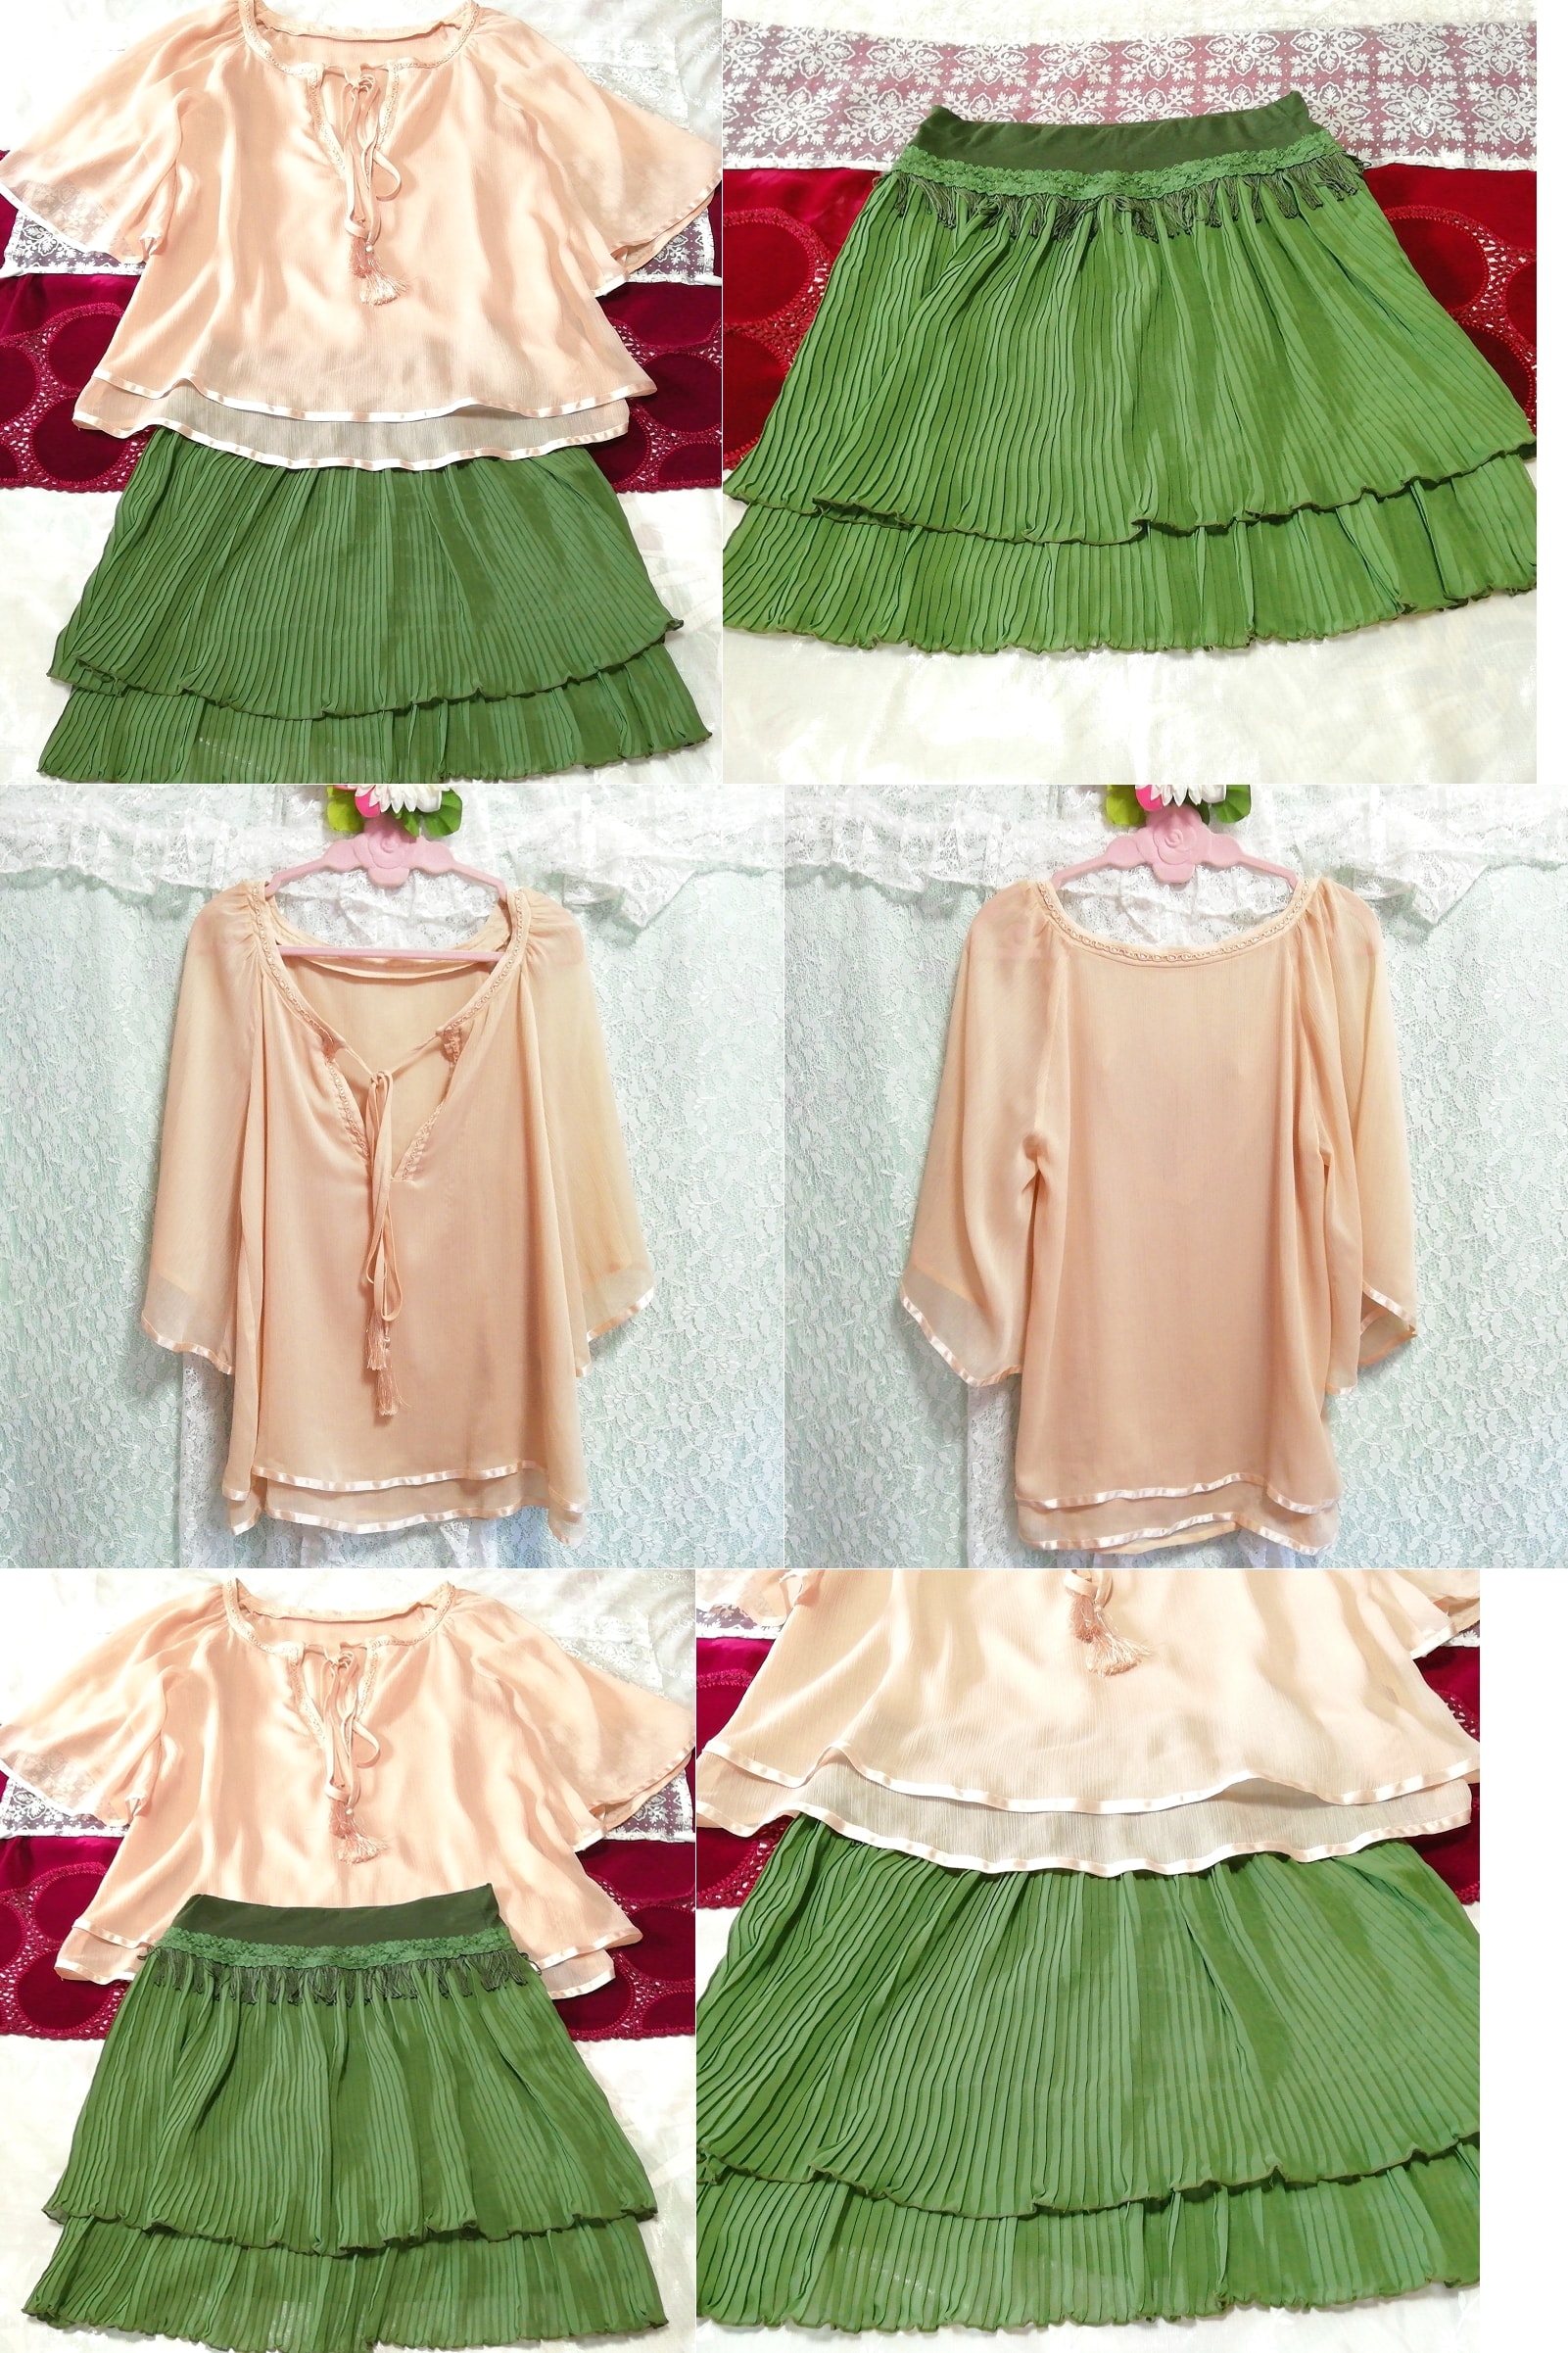 粉色米色雪纺长袍睡衣绿色百褶迷你裙 2P, 时尚, 女士时装, 睡衣